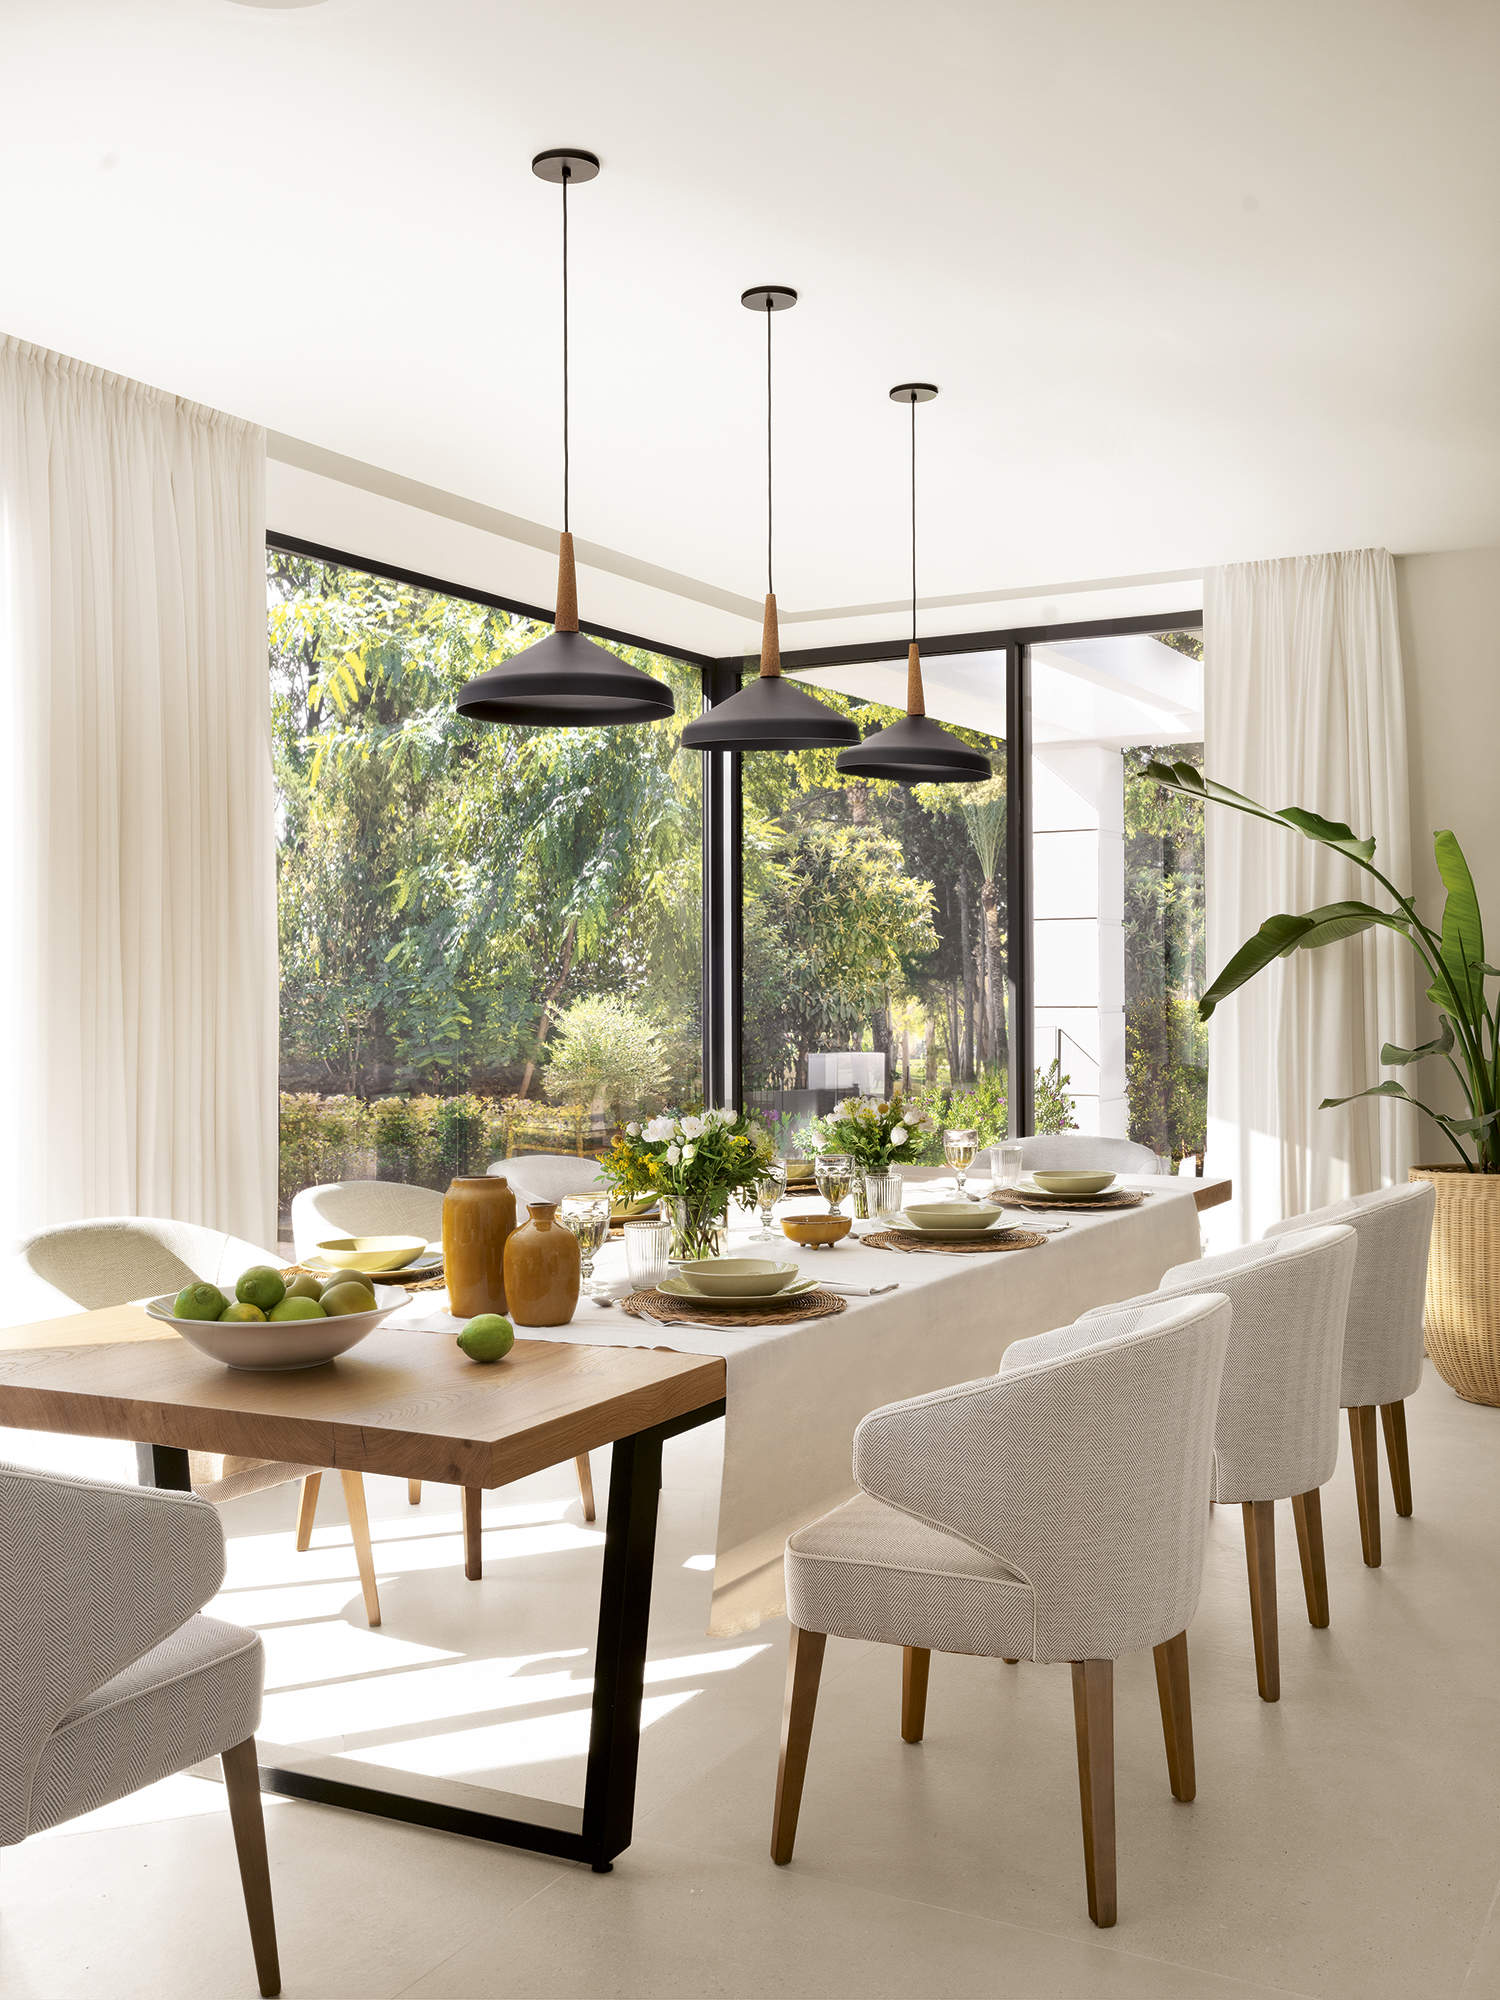 Comedor con suelo de gres, mesa rectangular de madera y sillas blancas tapizadas, plata, lámparas de techo